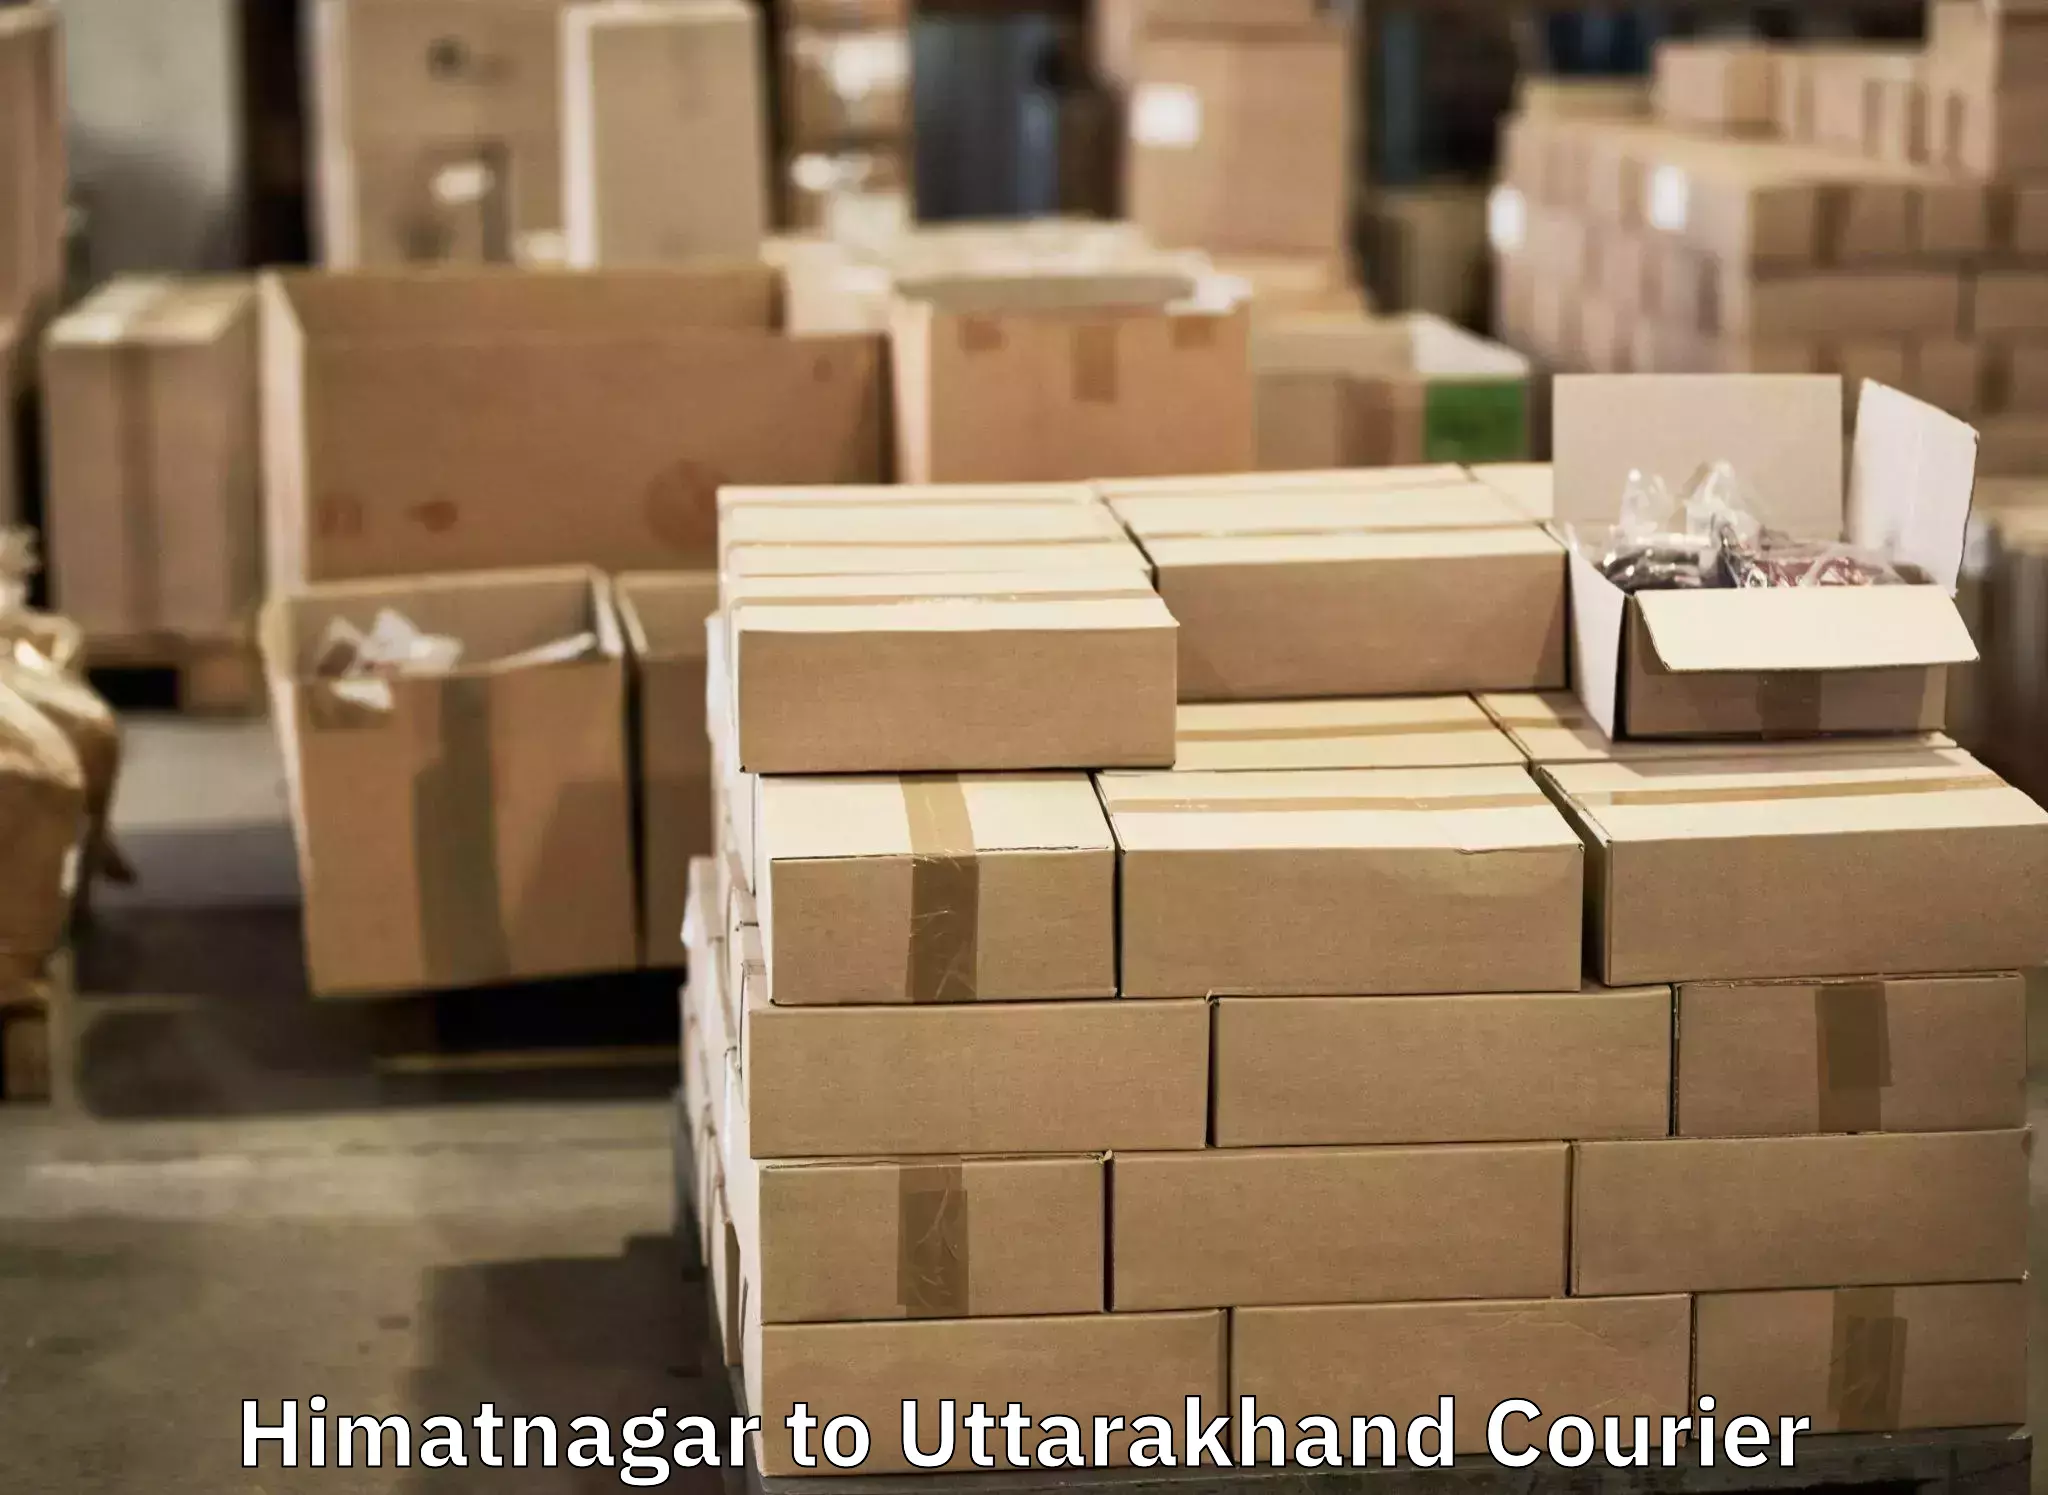 Luggage delivery network Himatnagar to Almora